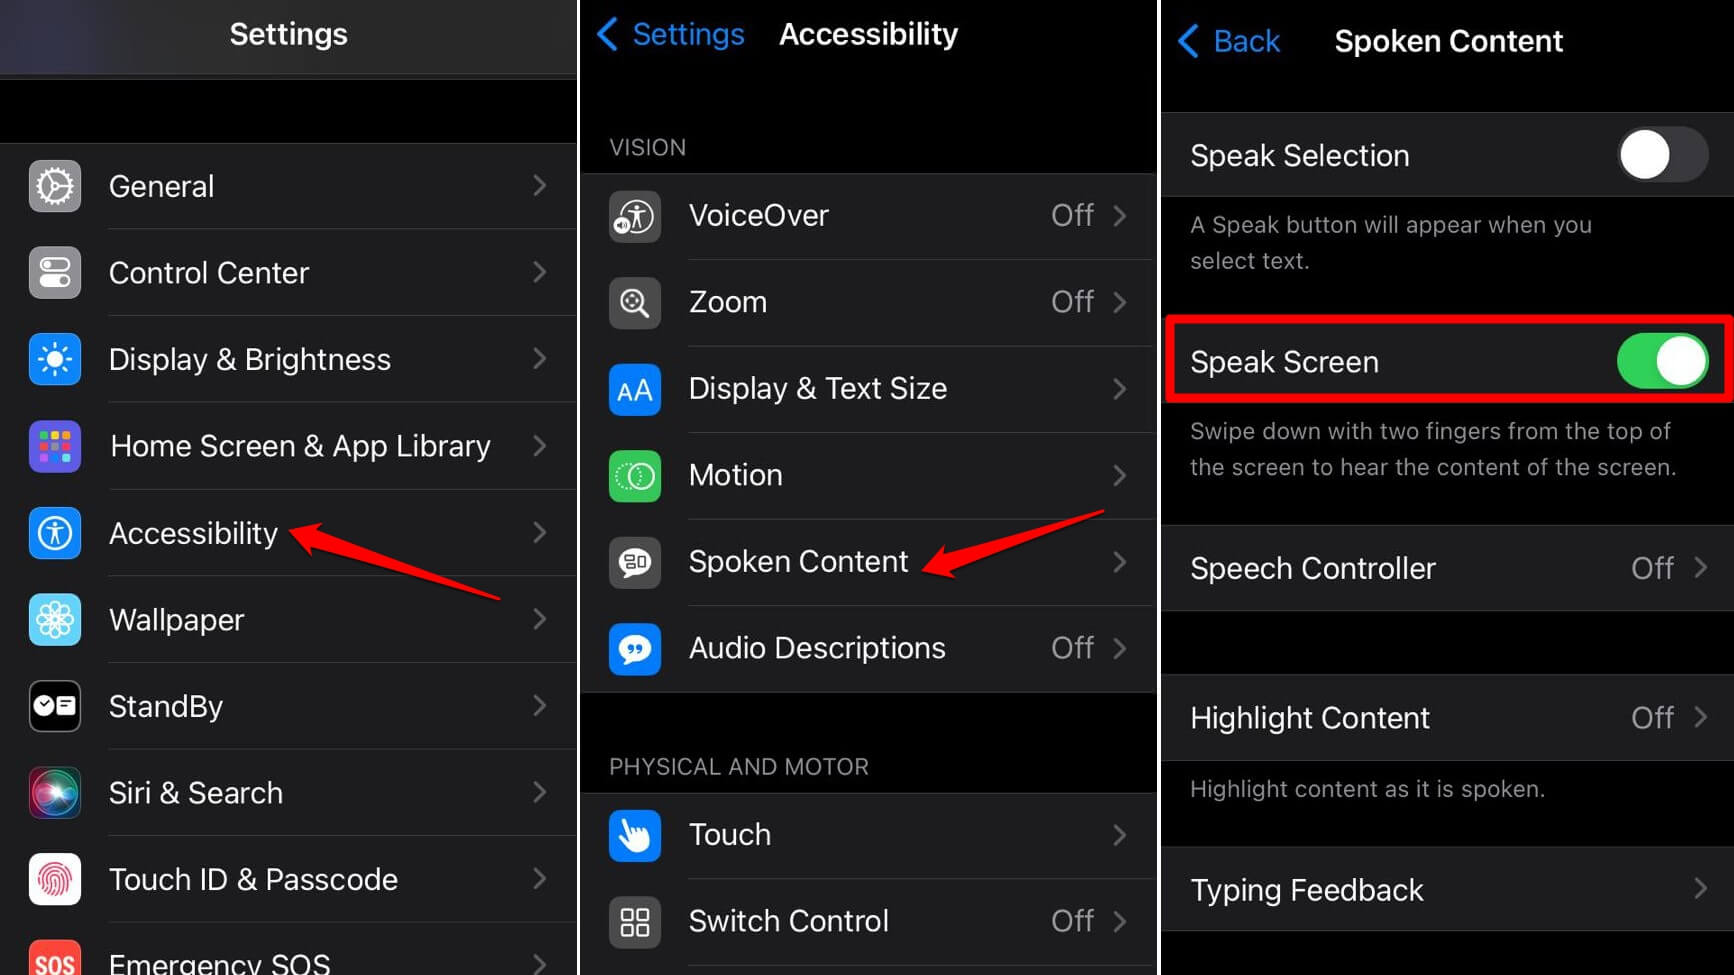 enable speak screen on iPhone